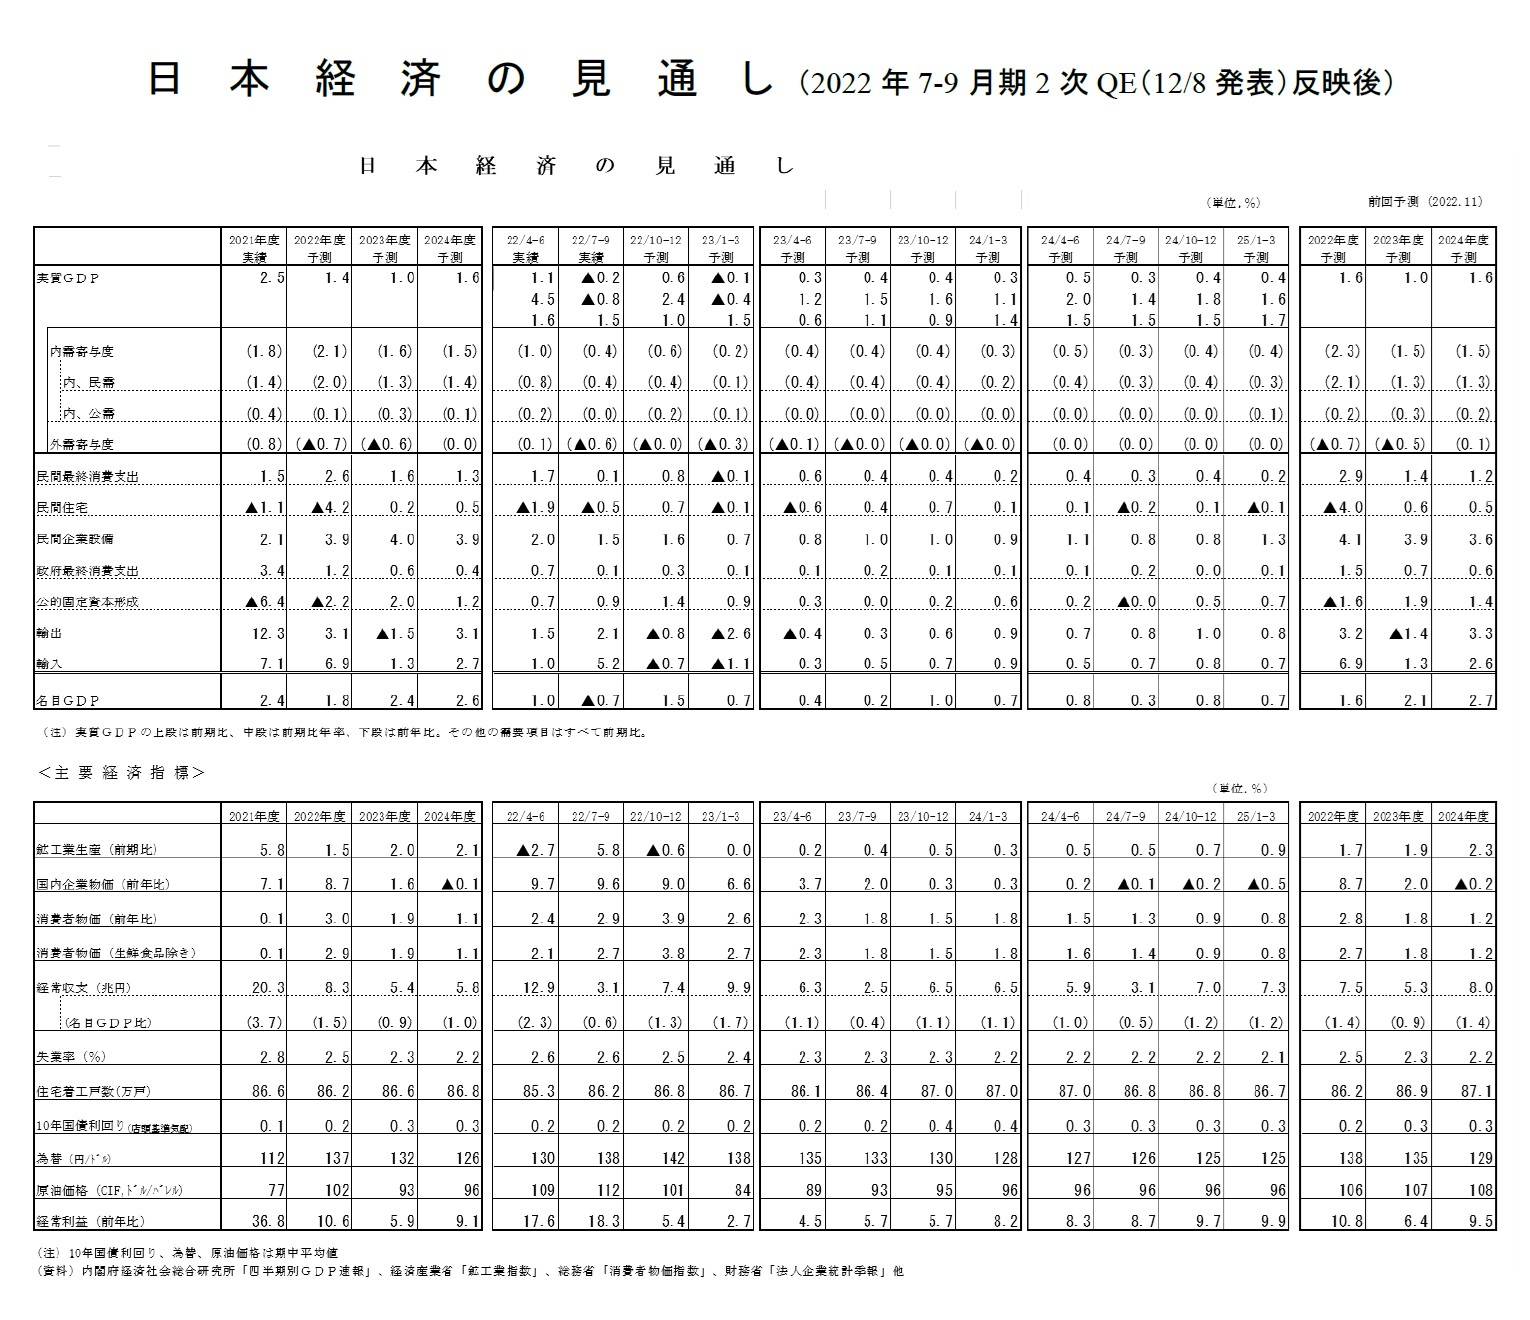 日本経済の見通し（2022年7-9月期2次QE（12/8発表）反映後）